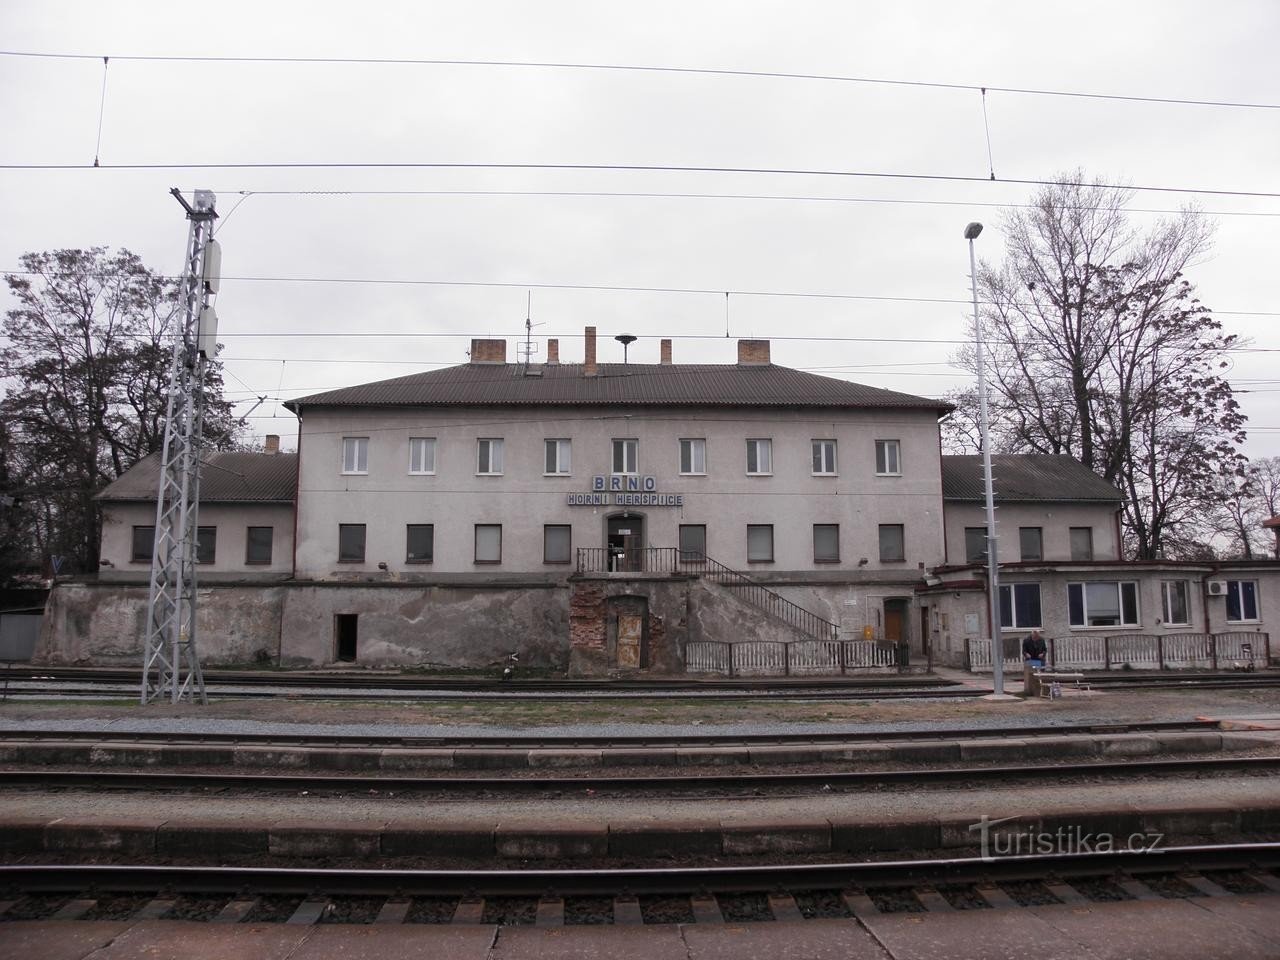 Đường sắt Brno Horní Heršpice - 31.3.2010